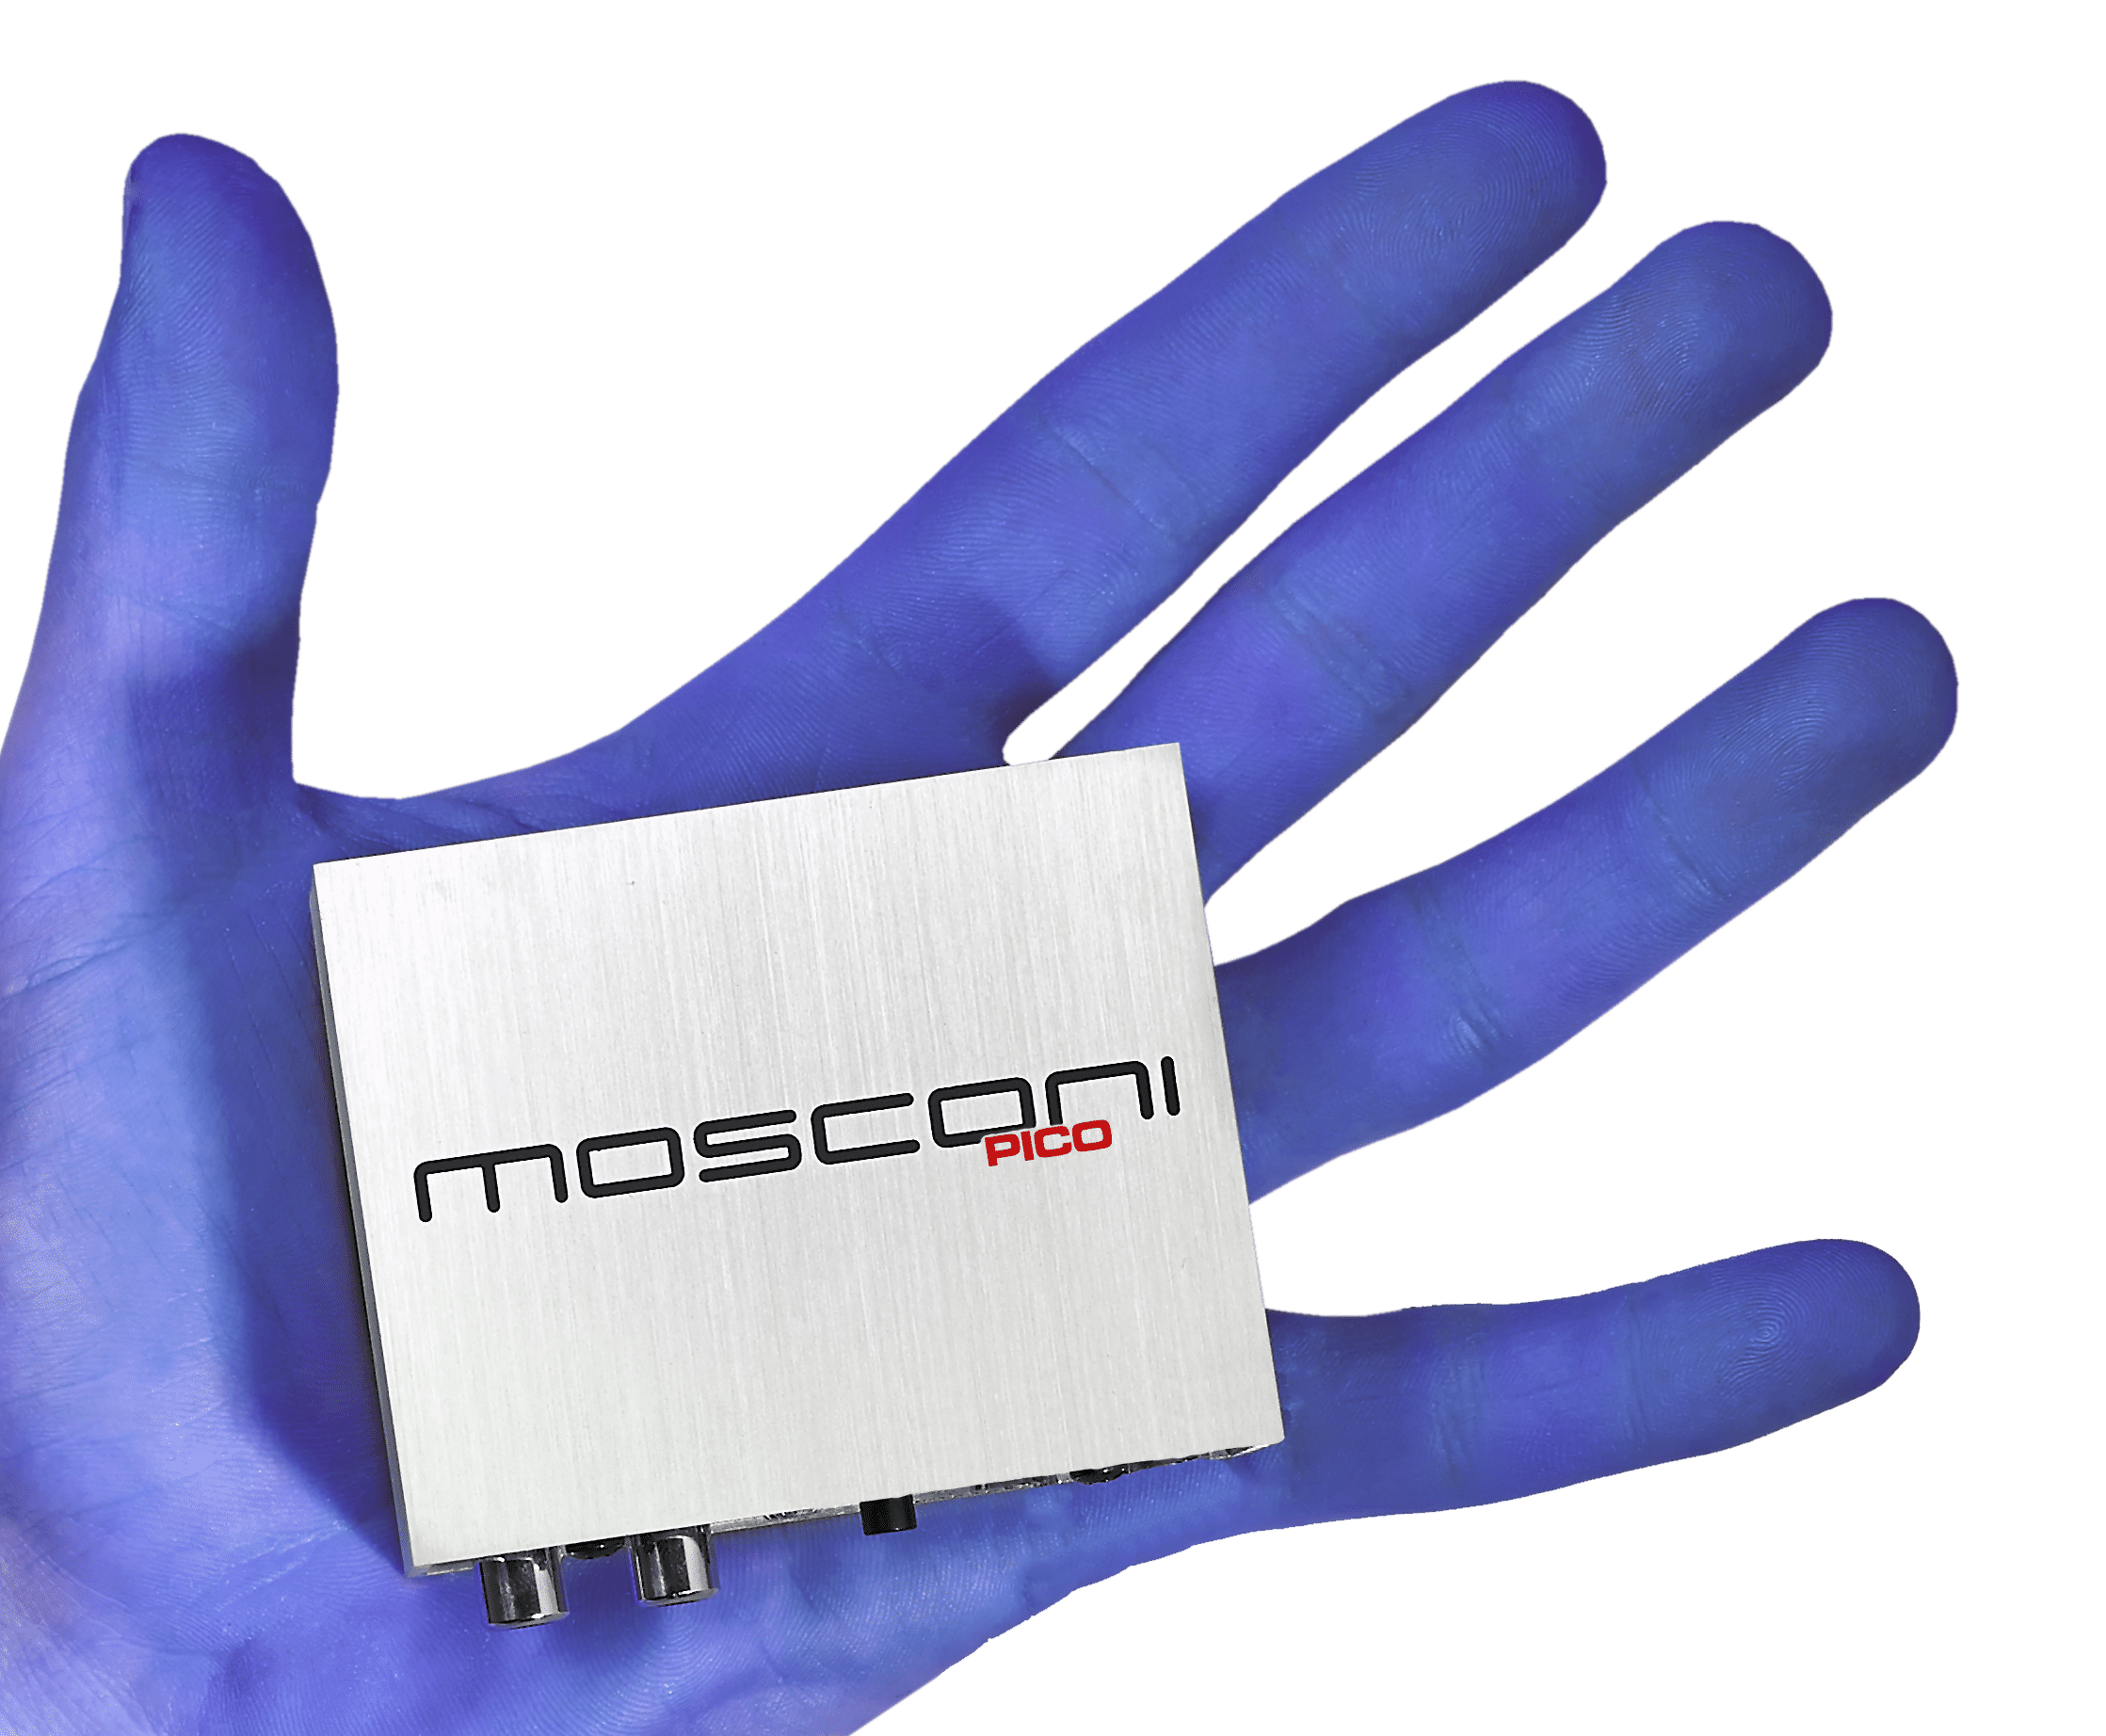 Pico 4 / Pico 4SA – Mosconi America / Gladen Audio America